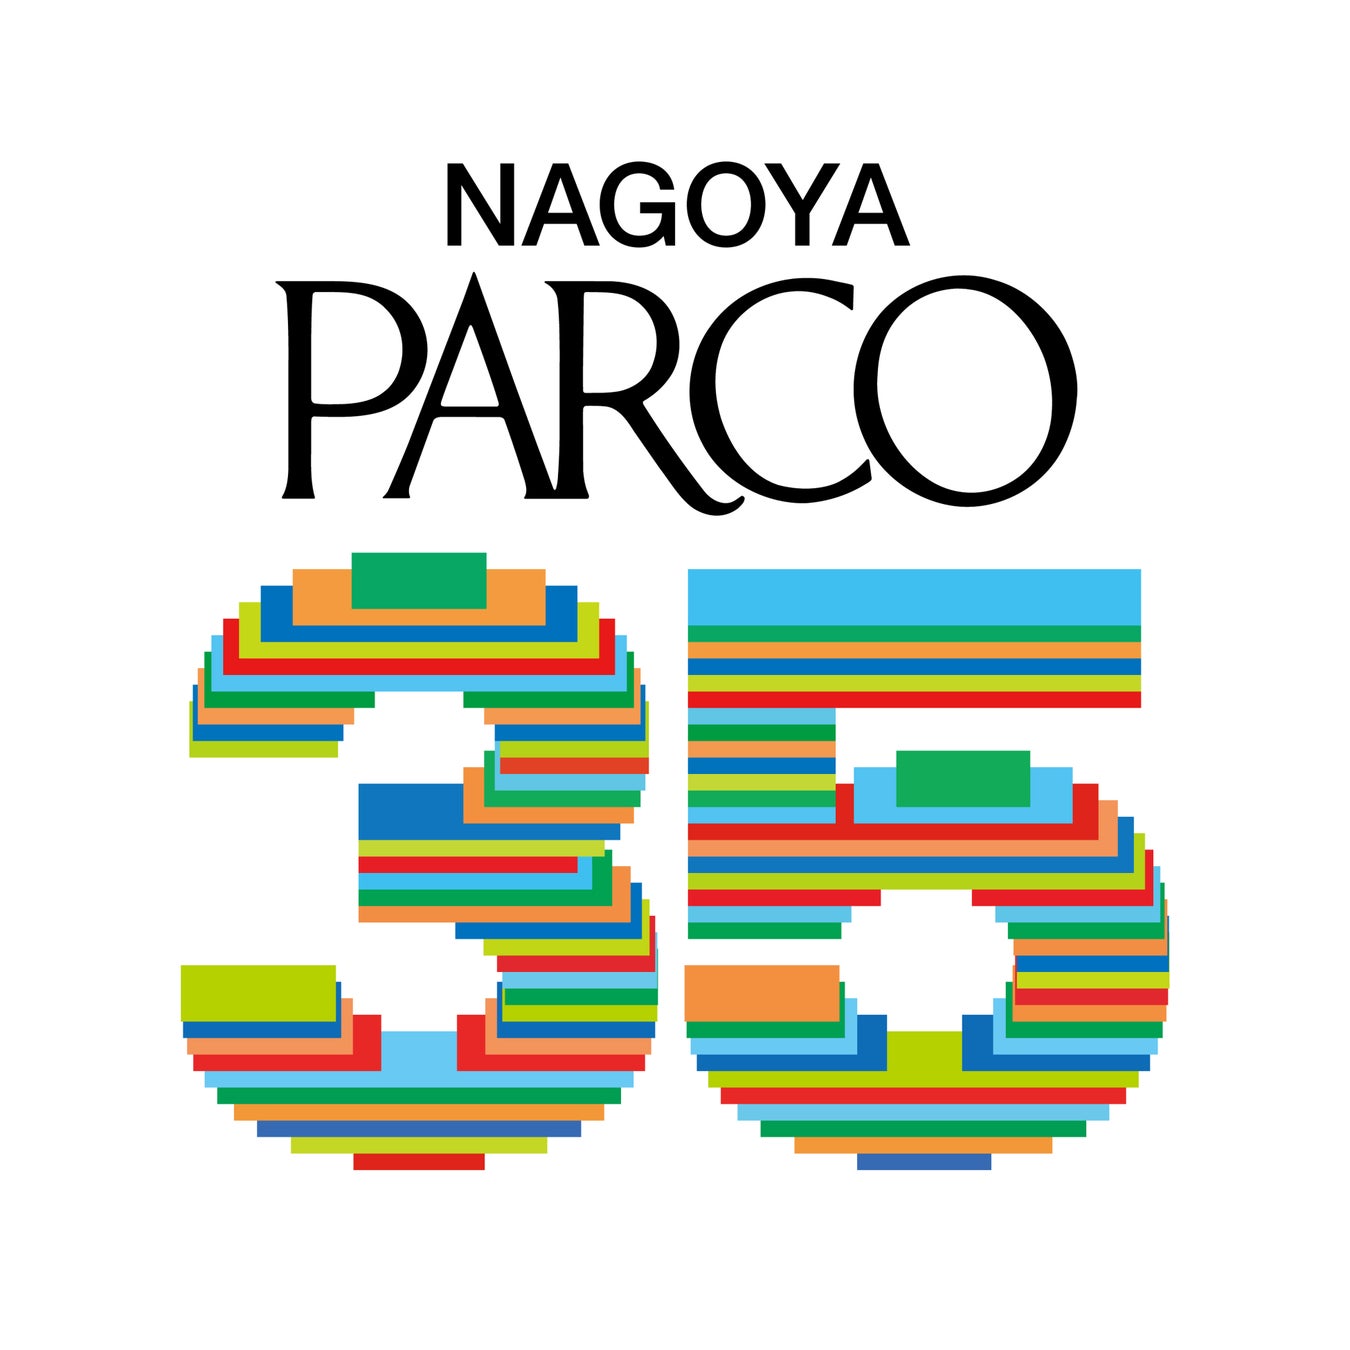 名古屋PARCO開業３５周年記念キャンペーン第１弾パルコの広告表現を通覧する展覧会を開催　“「パルコを広告す...